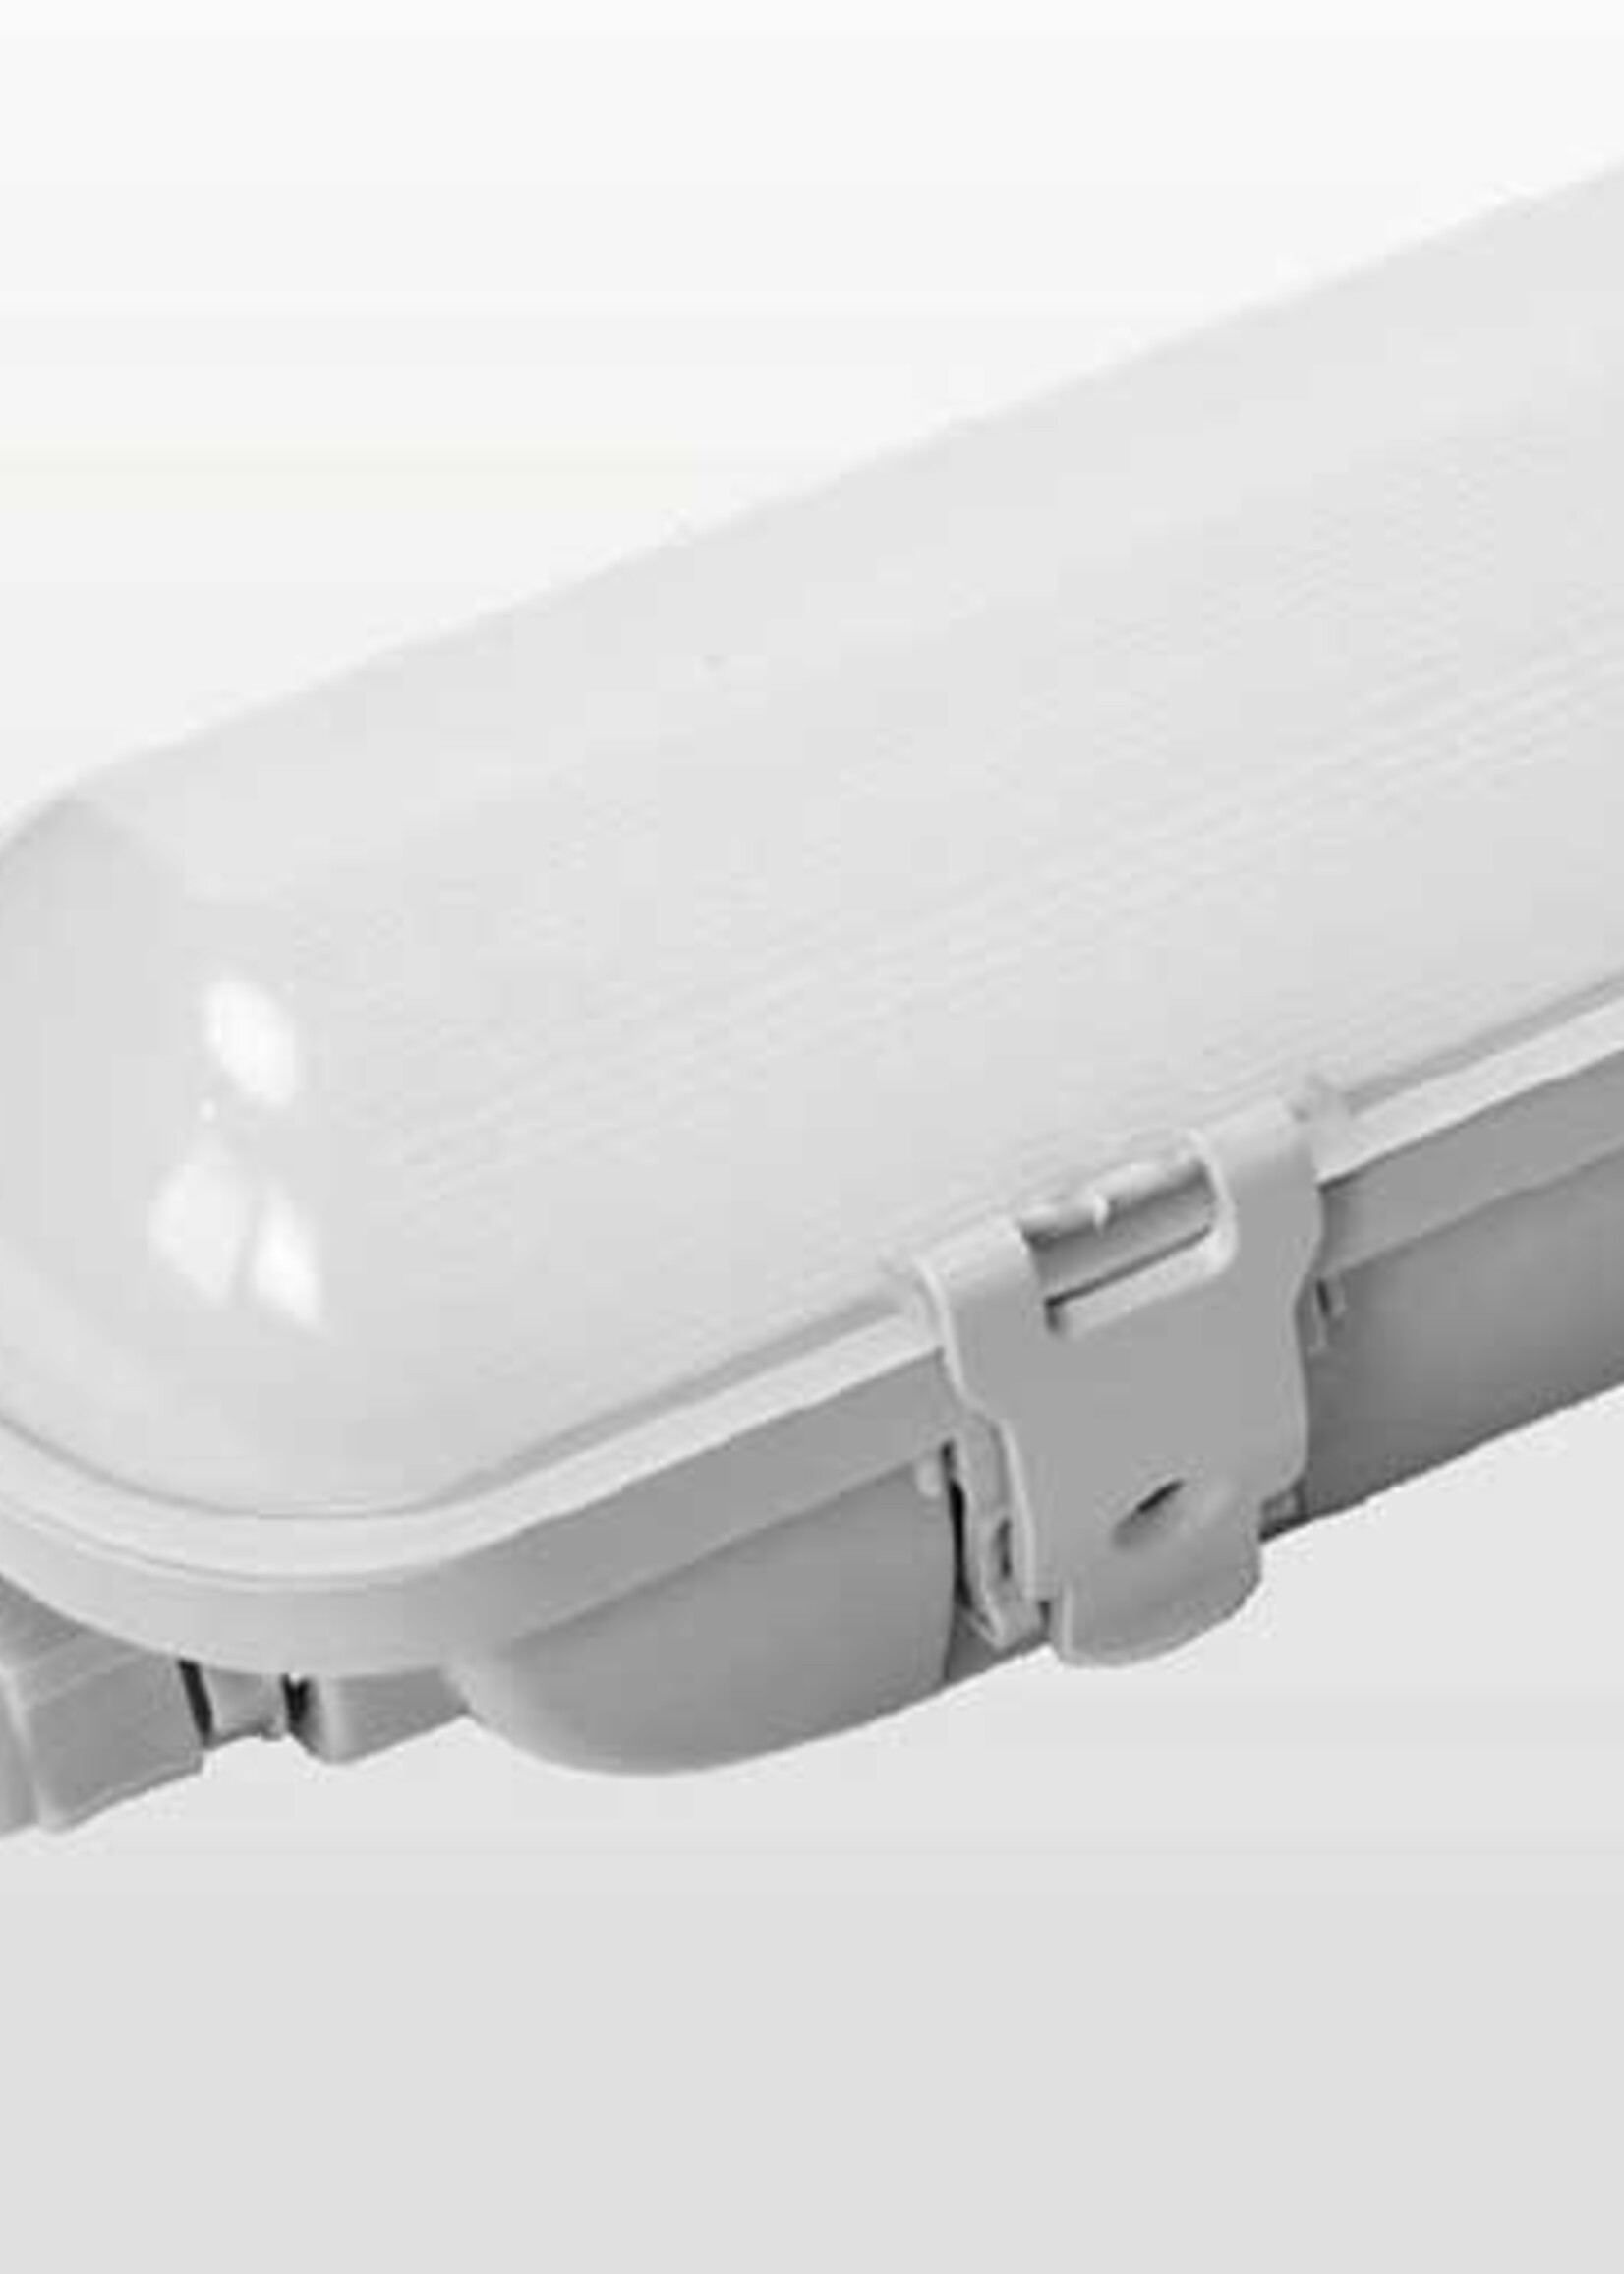 LEDWINKEL-Online LED TL IP65 waterbestendig 60cm koppelbaar 24W